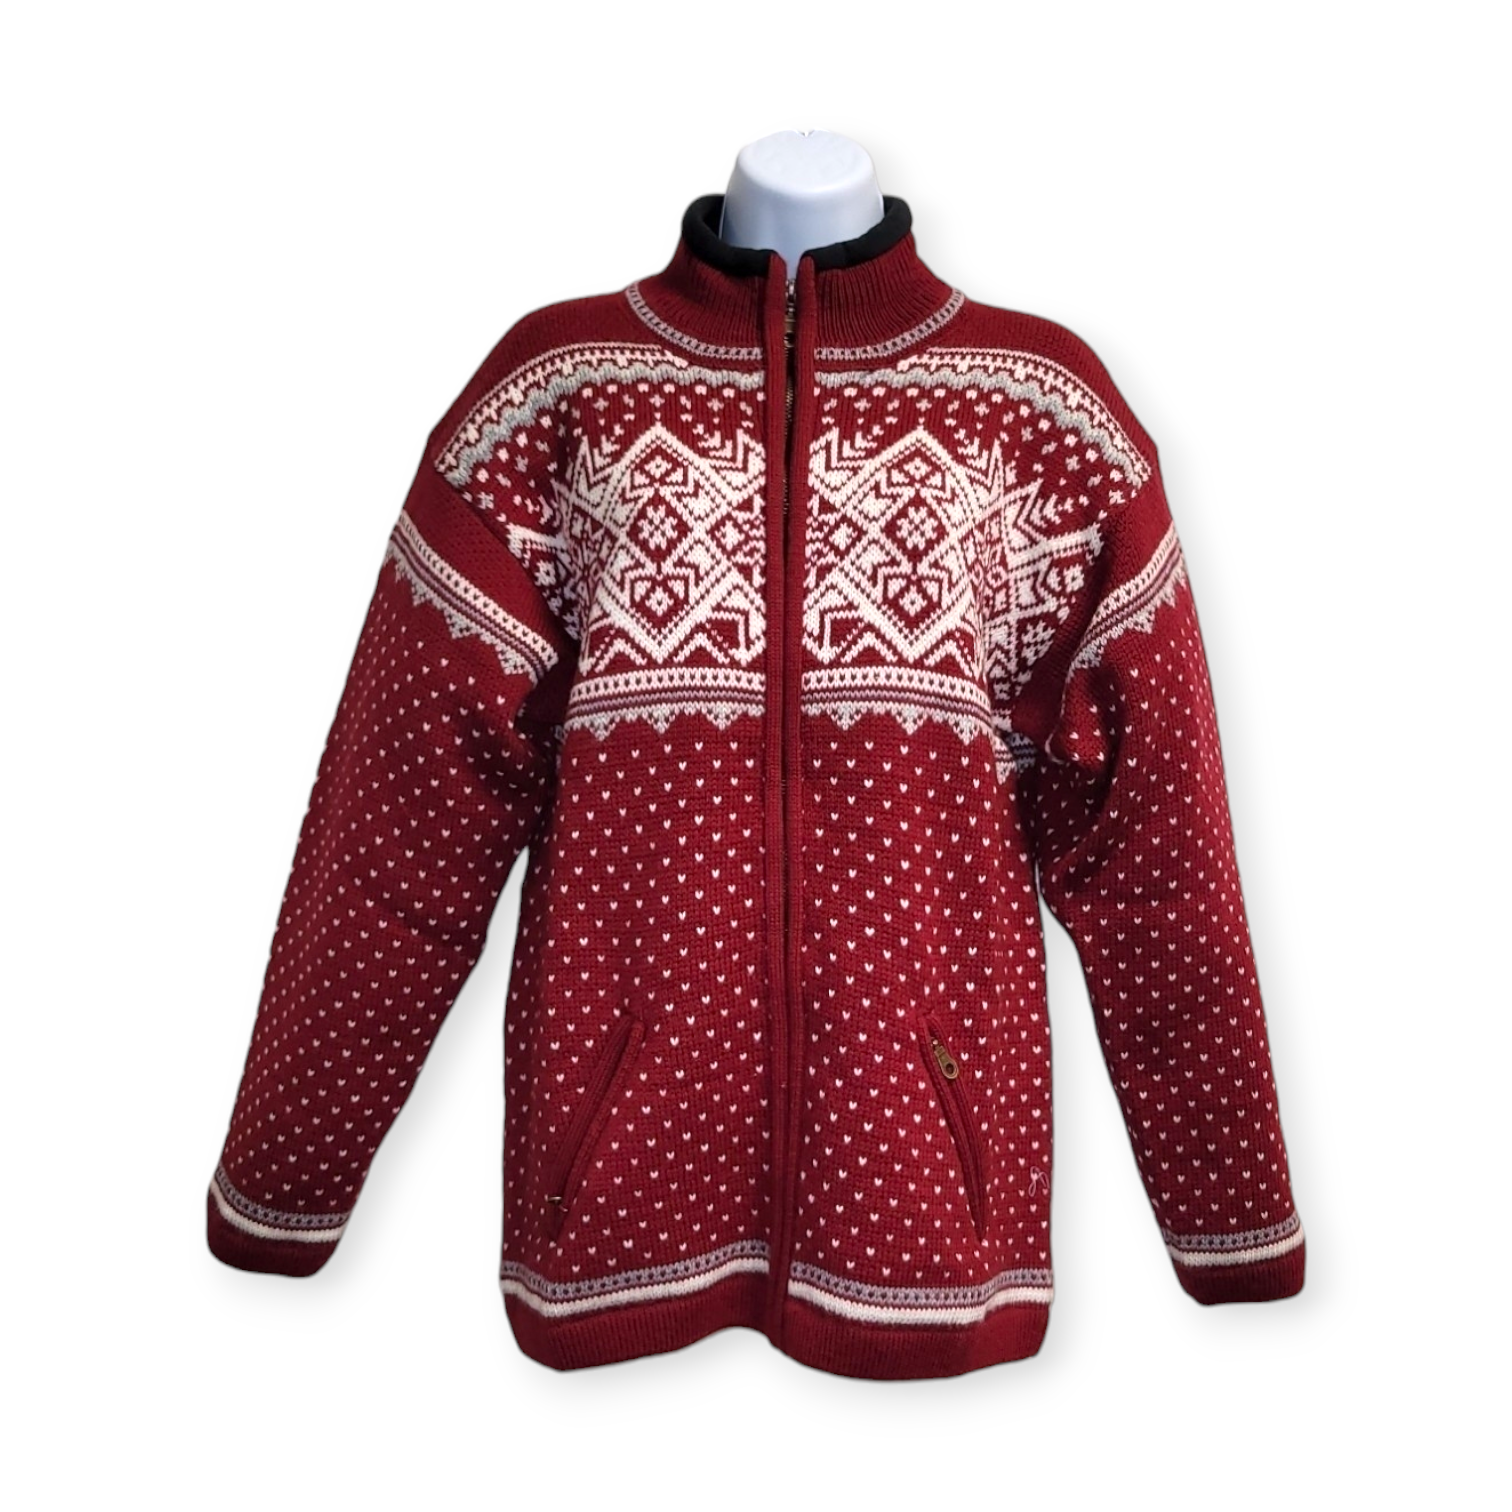 Sweater: Gjestal Windbreaker Classic Norwegian Sweater, Red